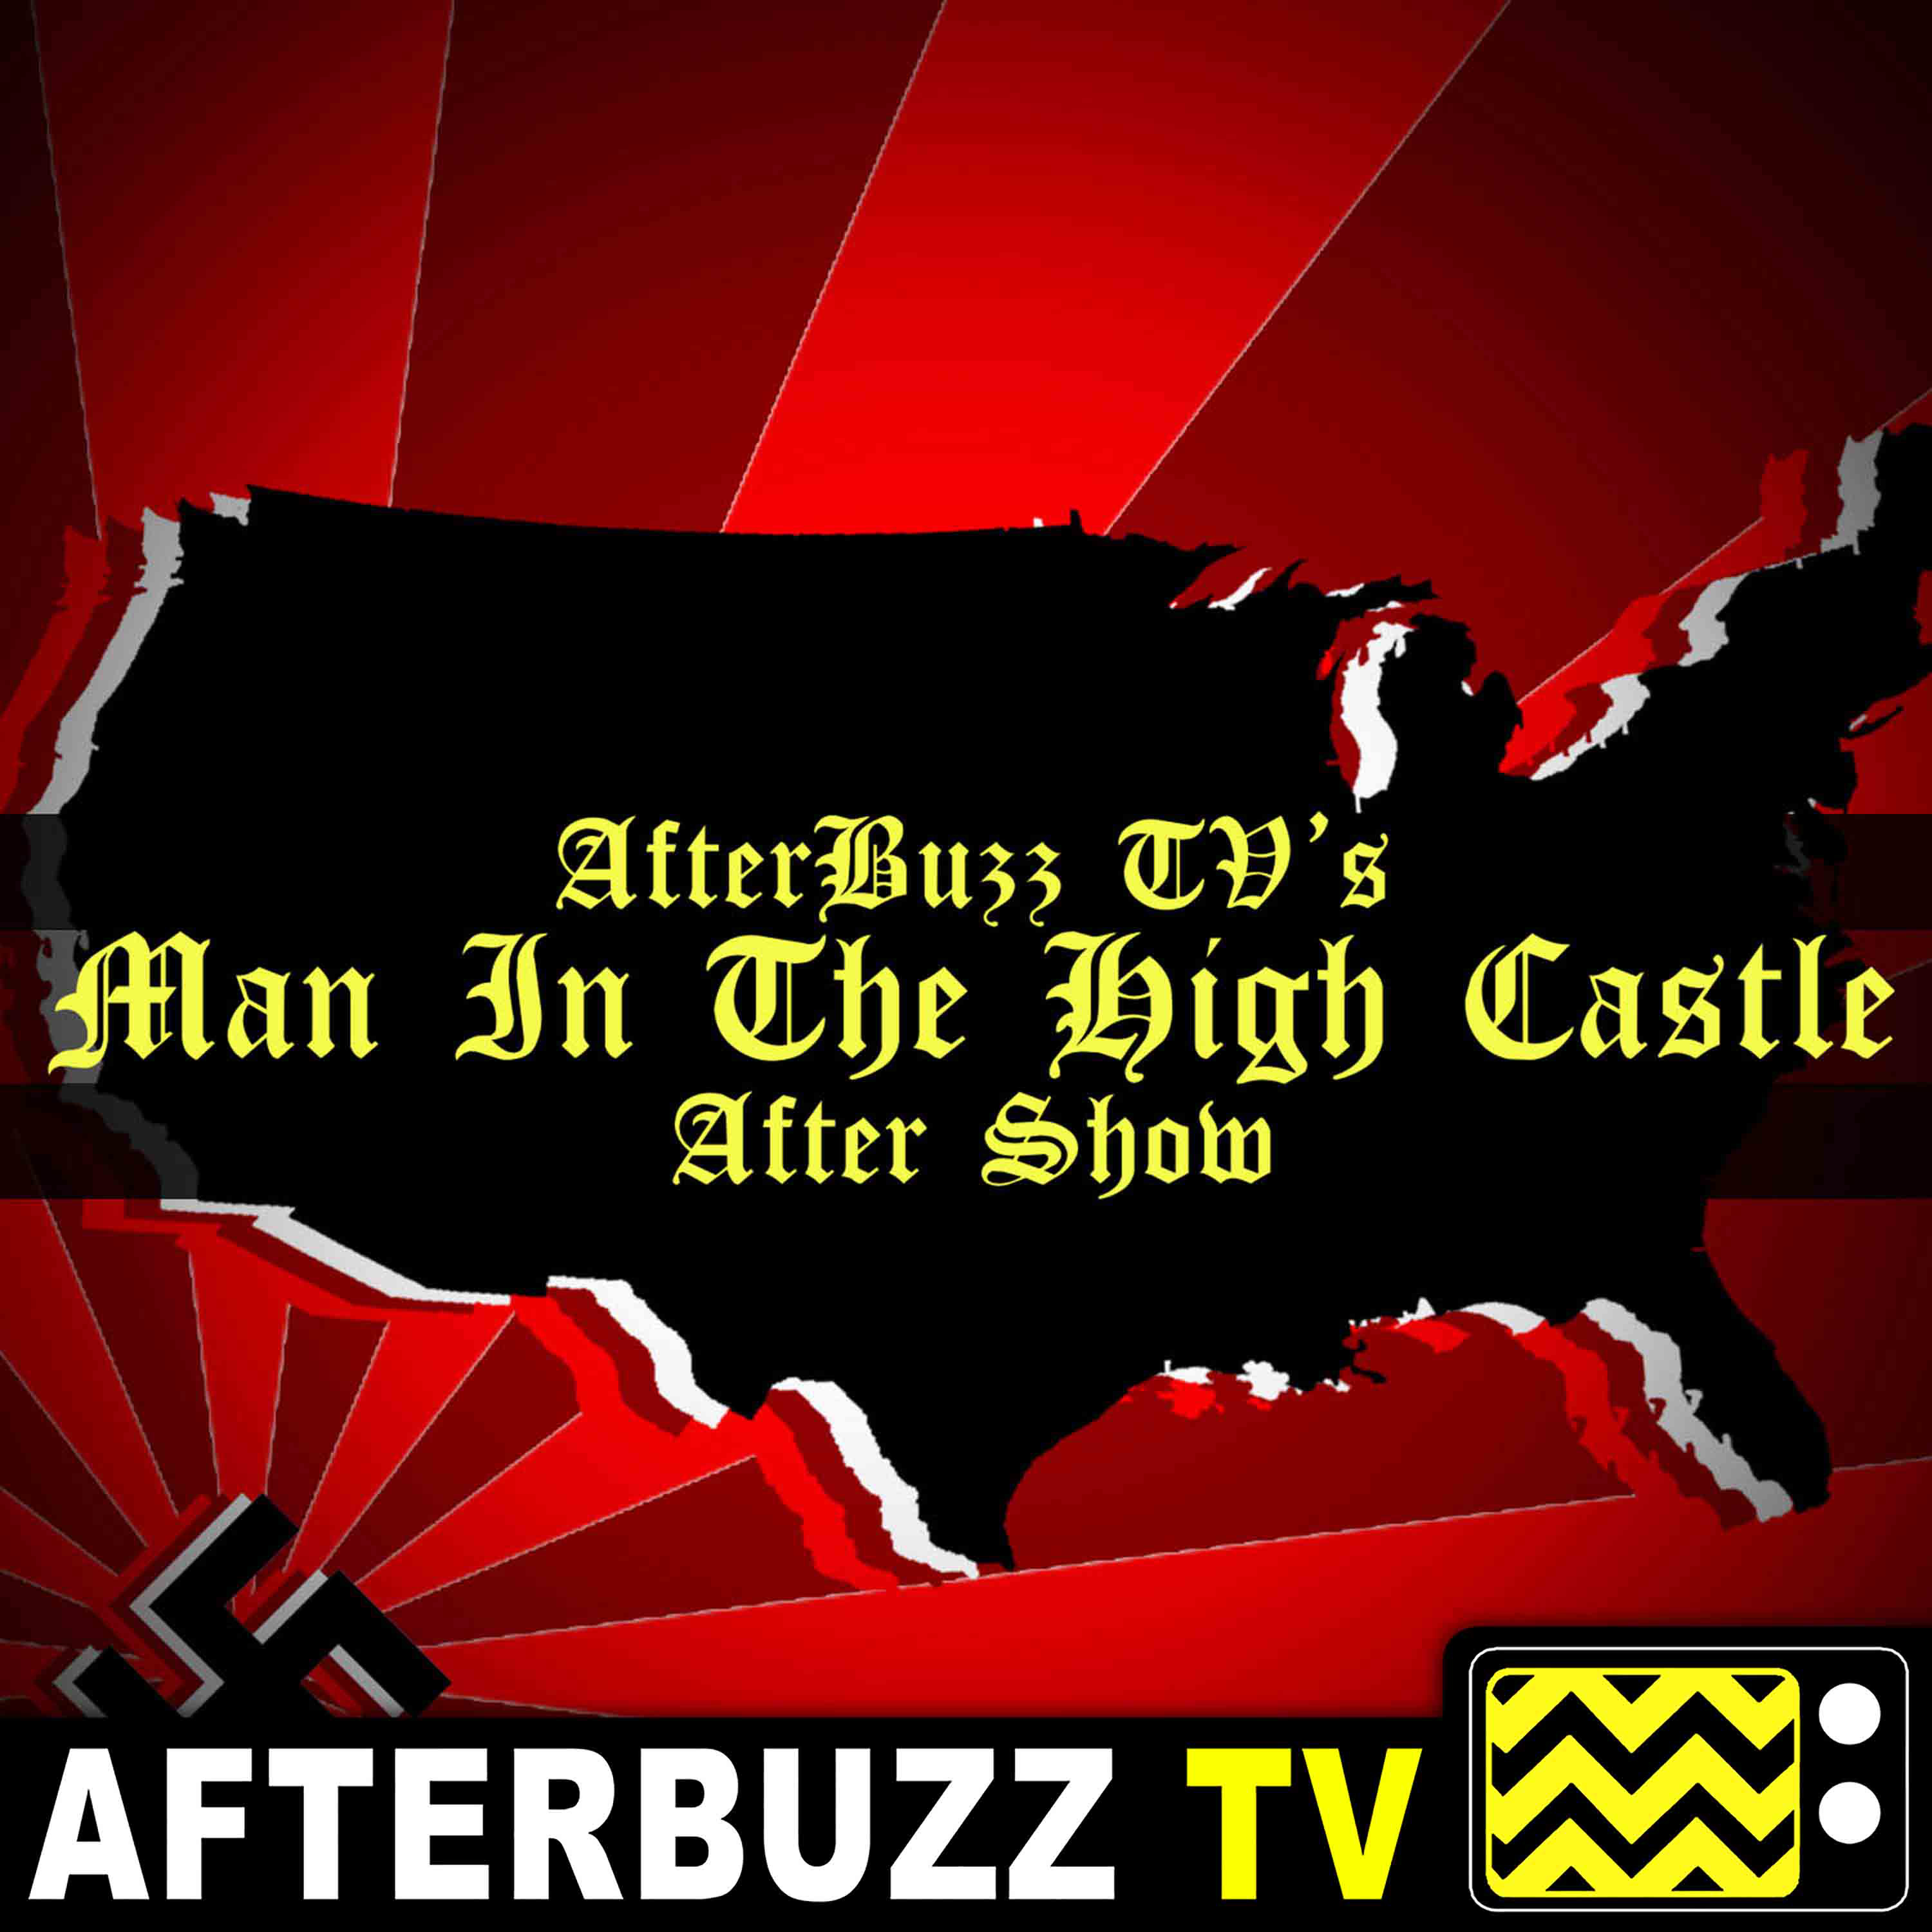 the man in the high castle season 1 episode 10 recap